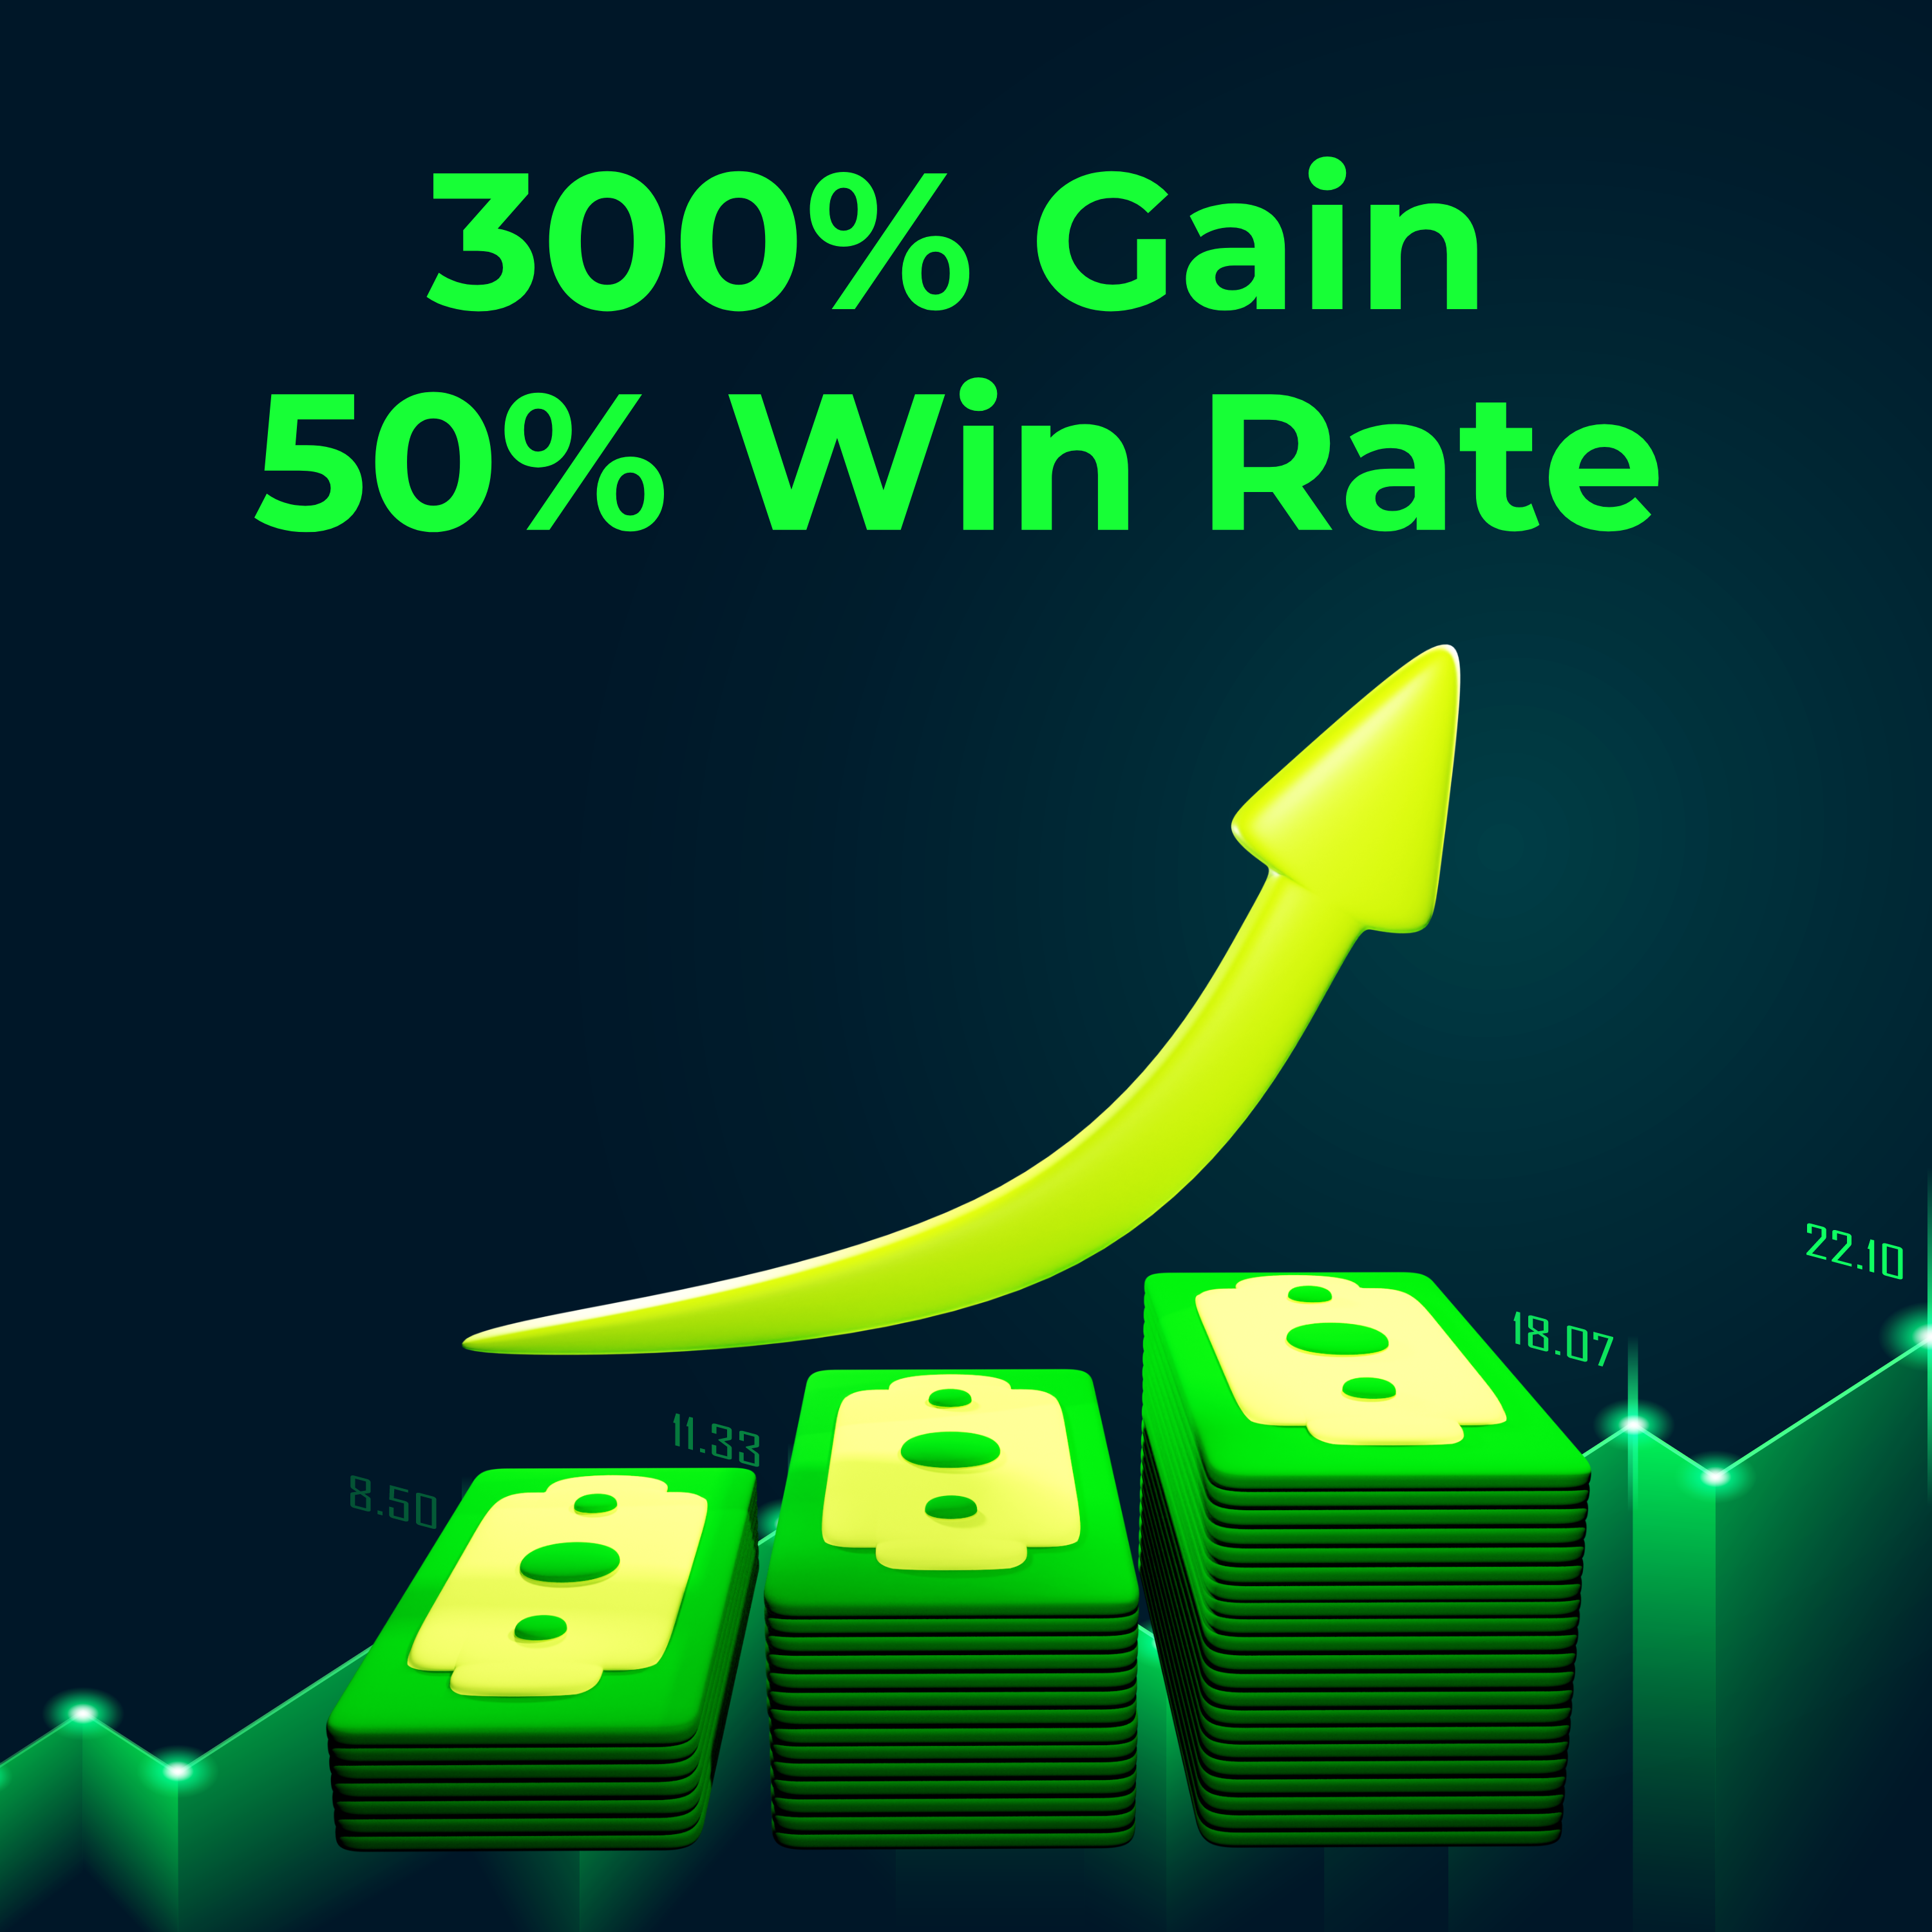 105: 300% Gain, 50% Win Rate